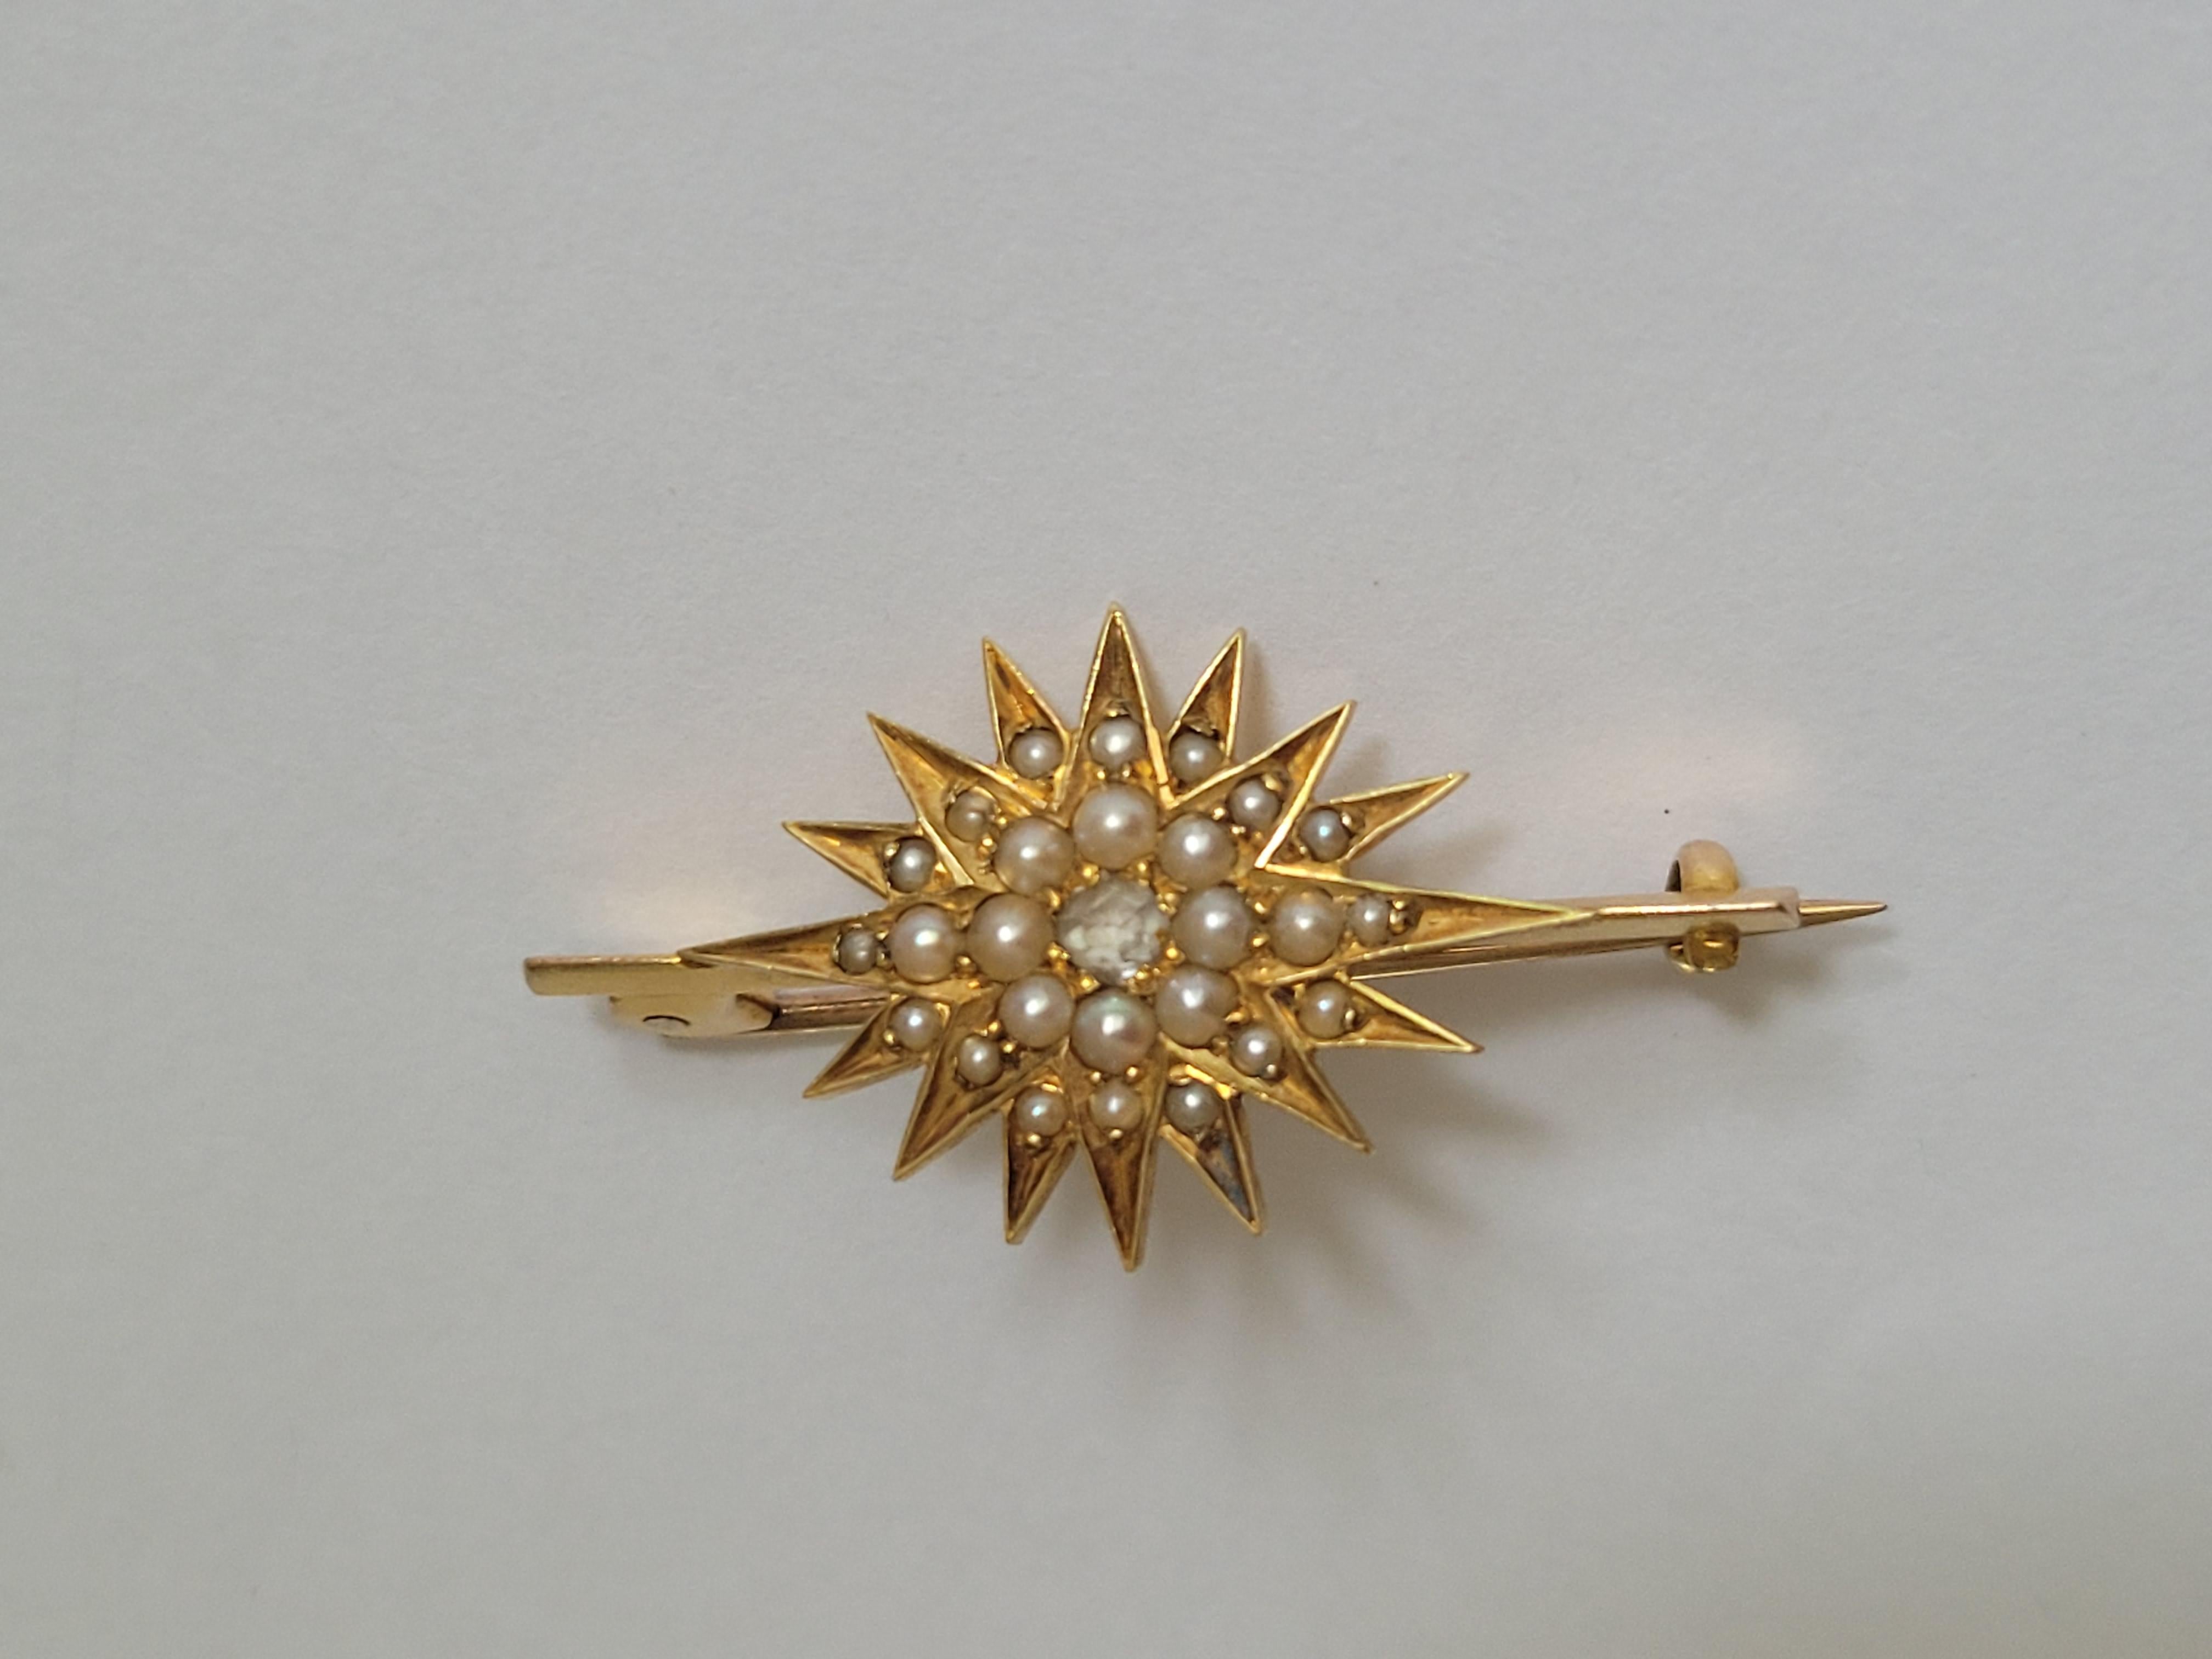 Eine wunderschöne Edwardian c.1900 18 Karat Gold, Rosenschliff Diamant und Split Natural Pearl Starburst bar Brosche. Englischer Ursprung.
Gesamtlänge der Brosche 35 mm.
Starburst 25mm oder 1